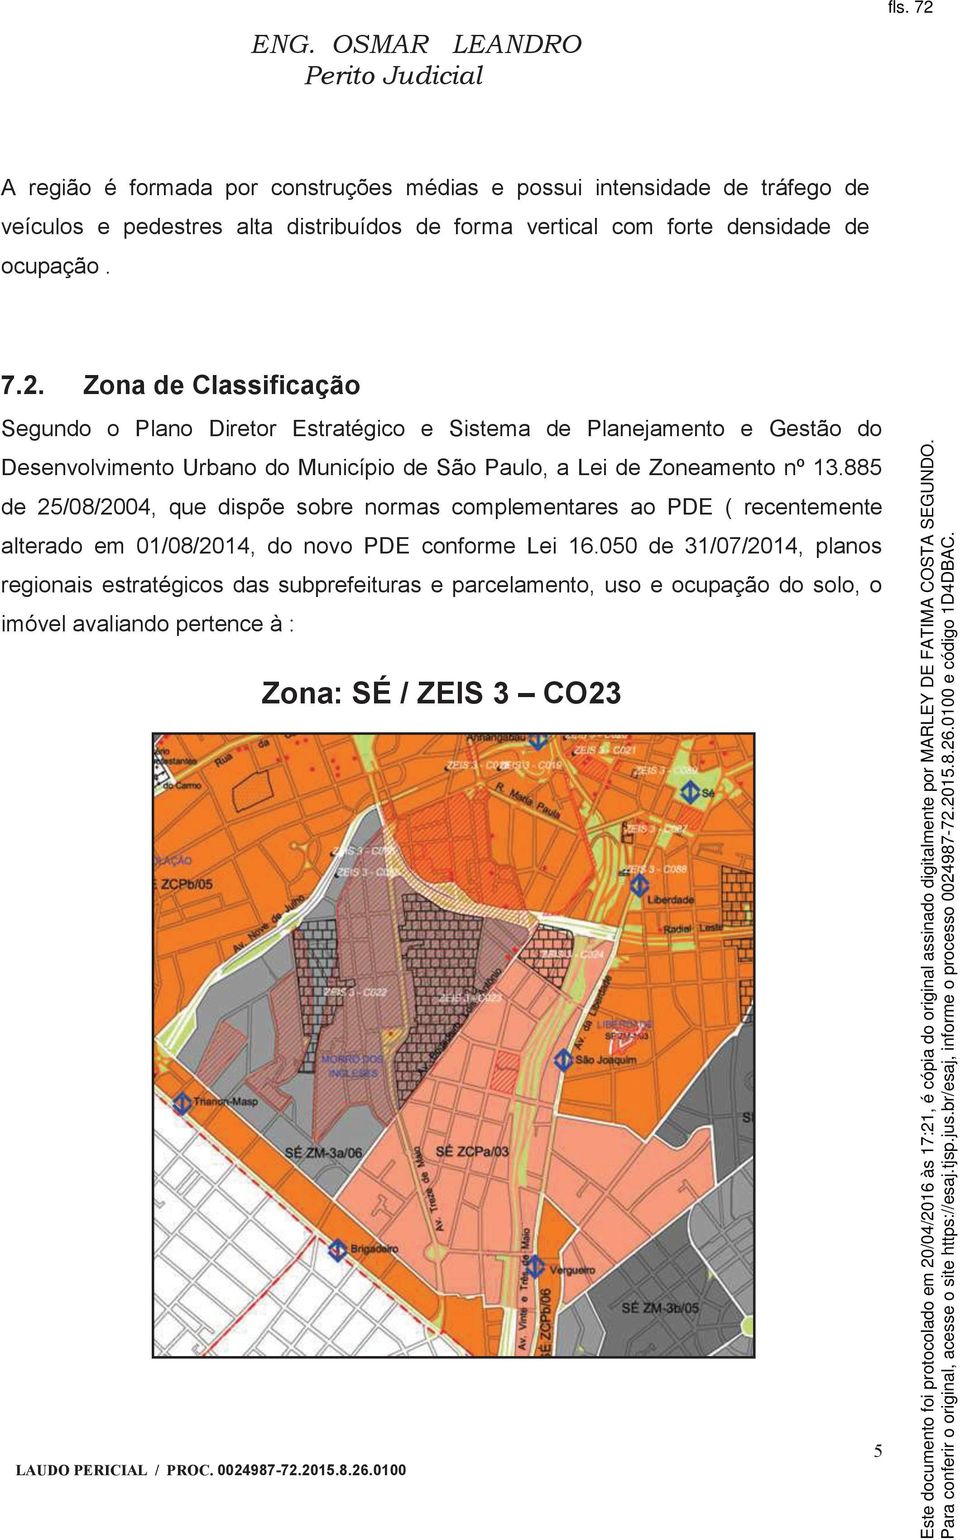 Zona de Classificação Segundo o Plano Diretor Estratégico e Sistema de Planejamento e Gestão do Desenvolvimento Urbano do Município de São Paulo, a Lei de